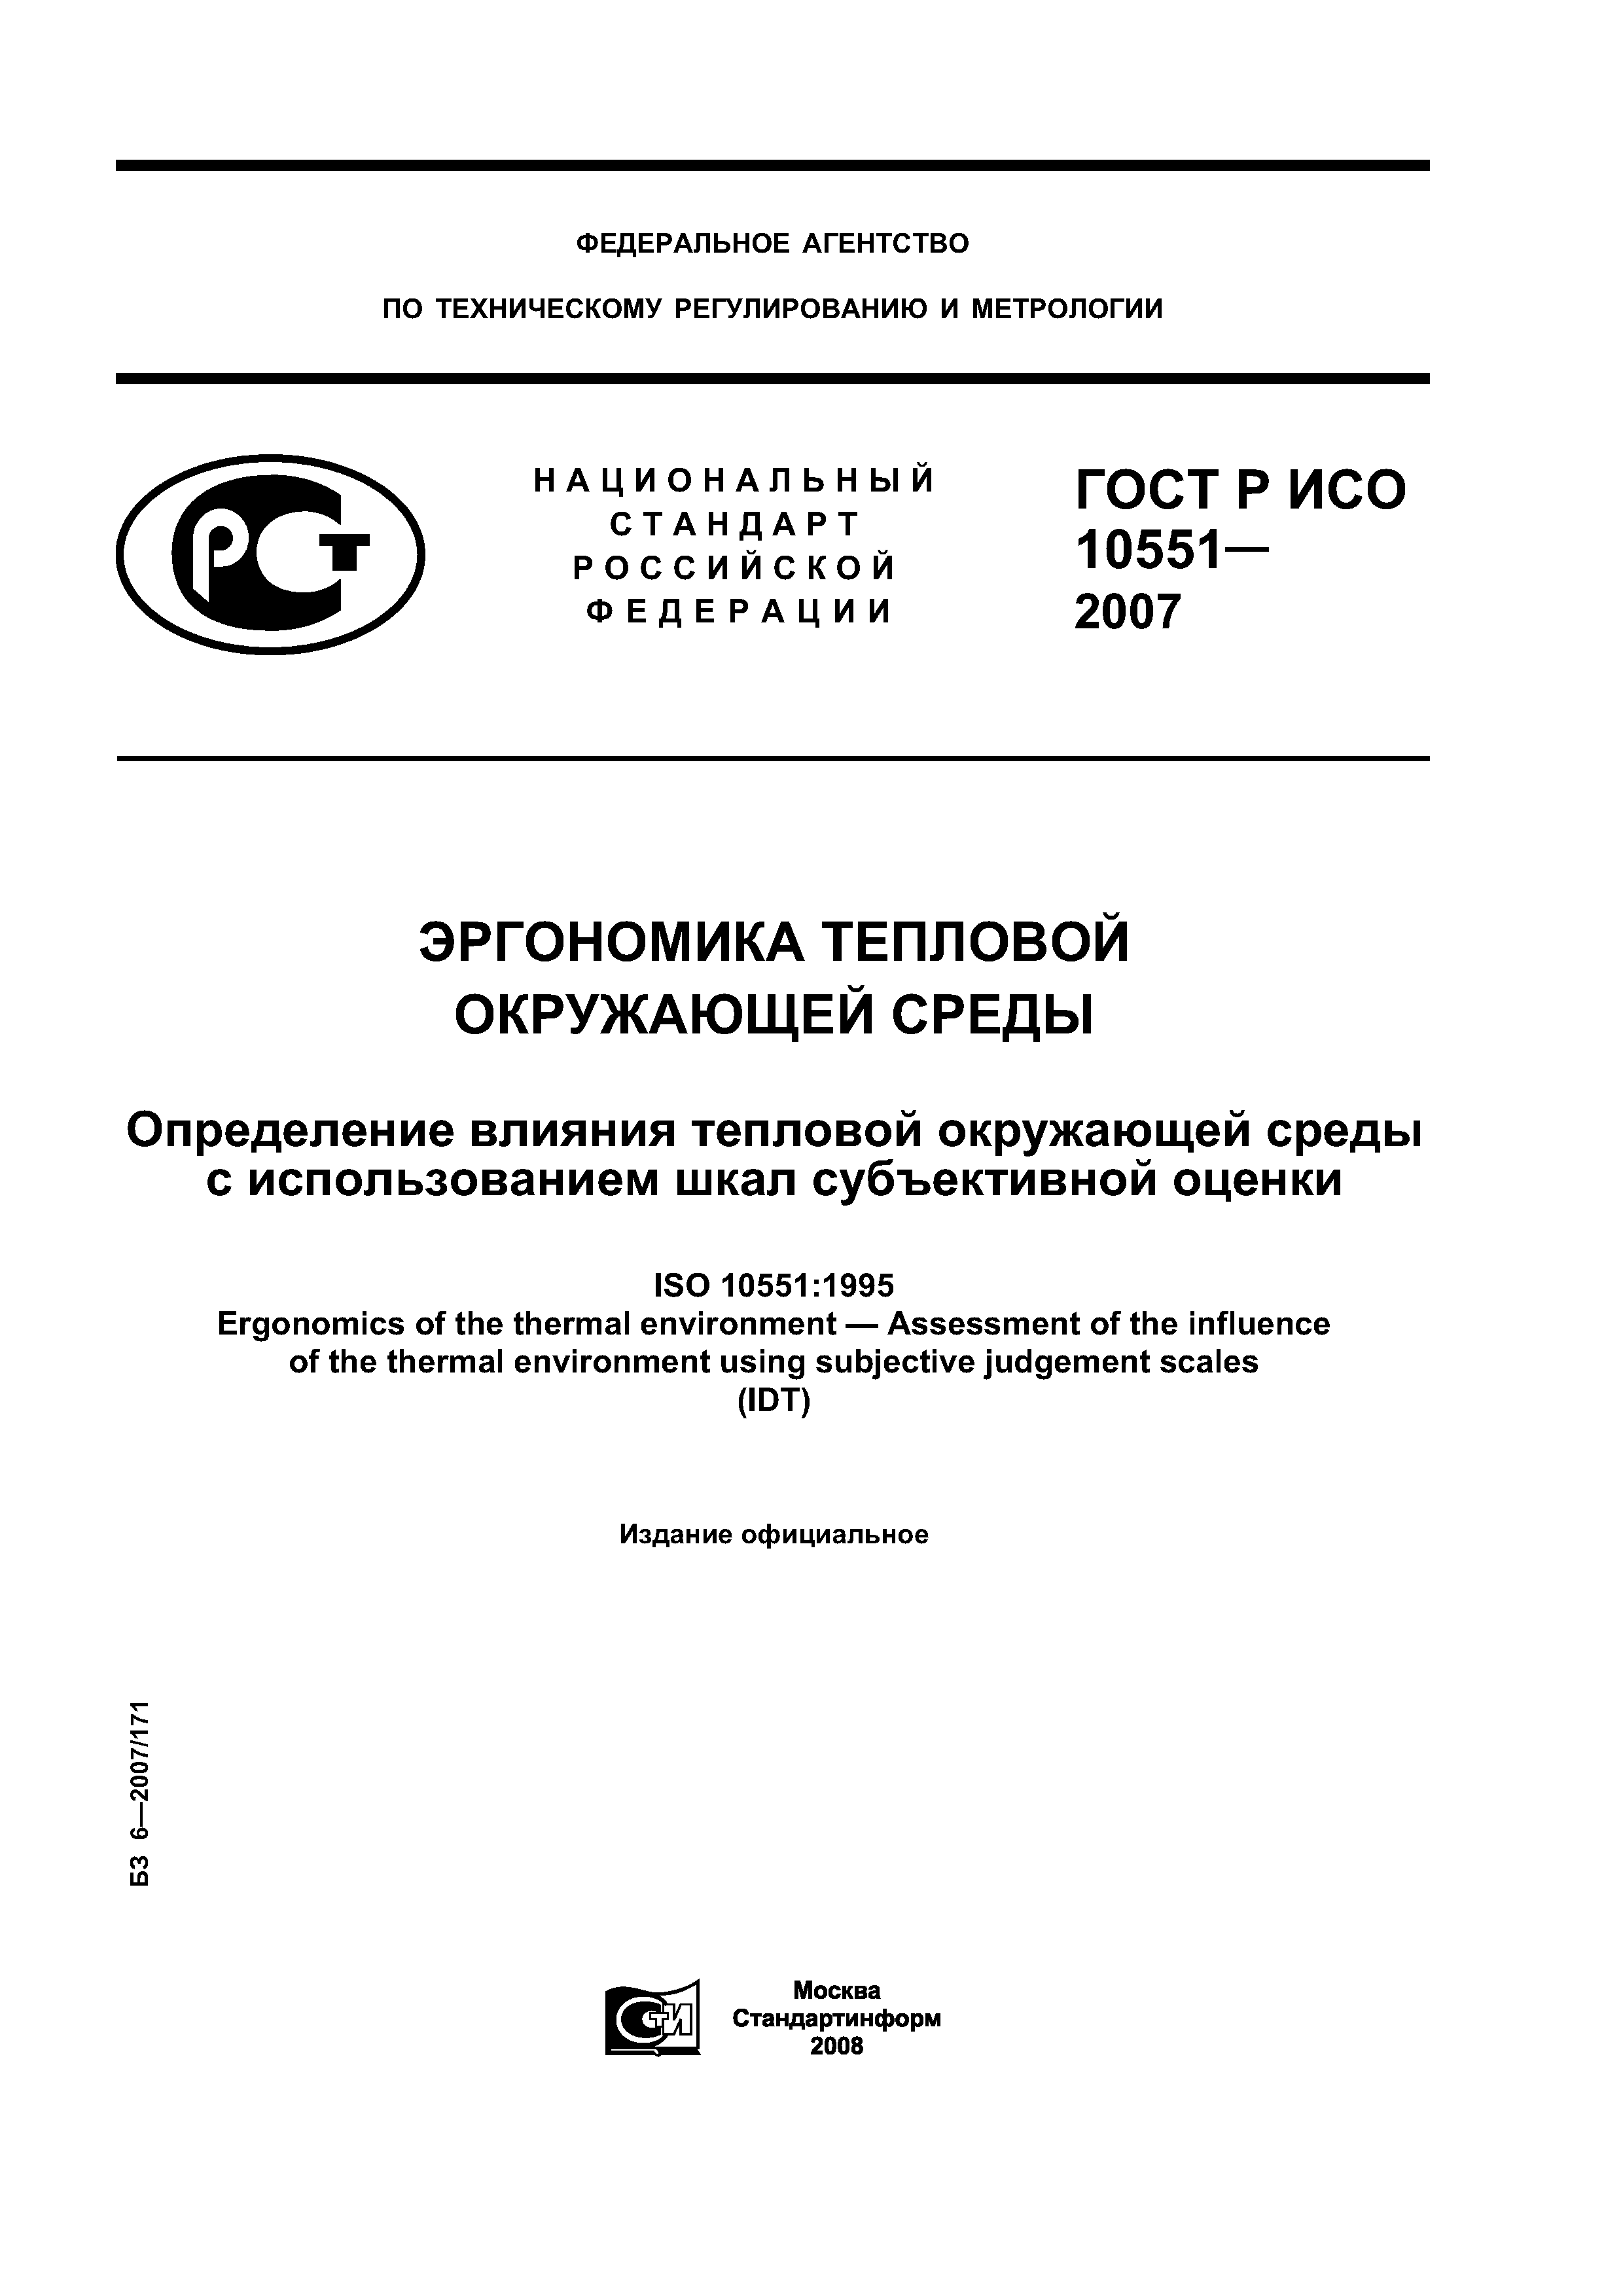 ГОСТ Р ИСО 10551-2007